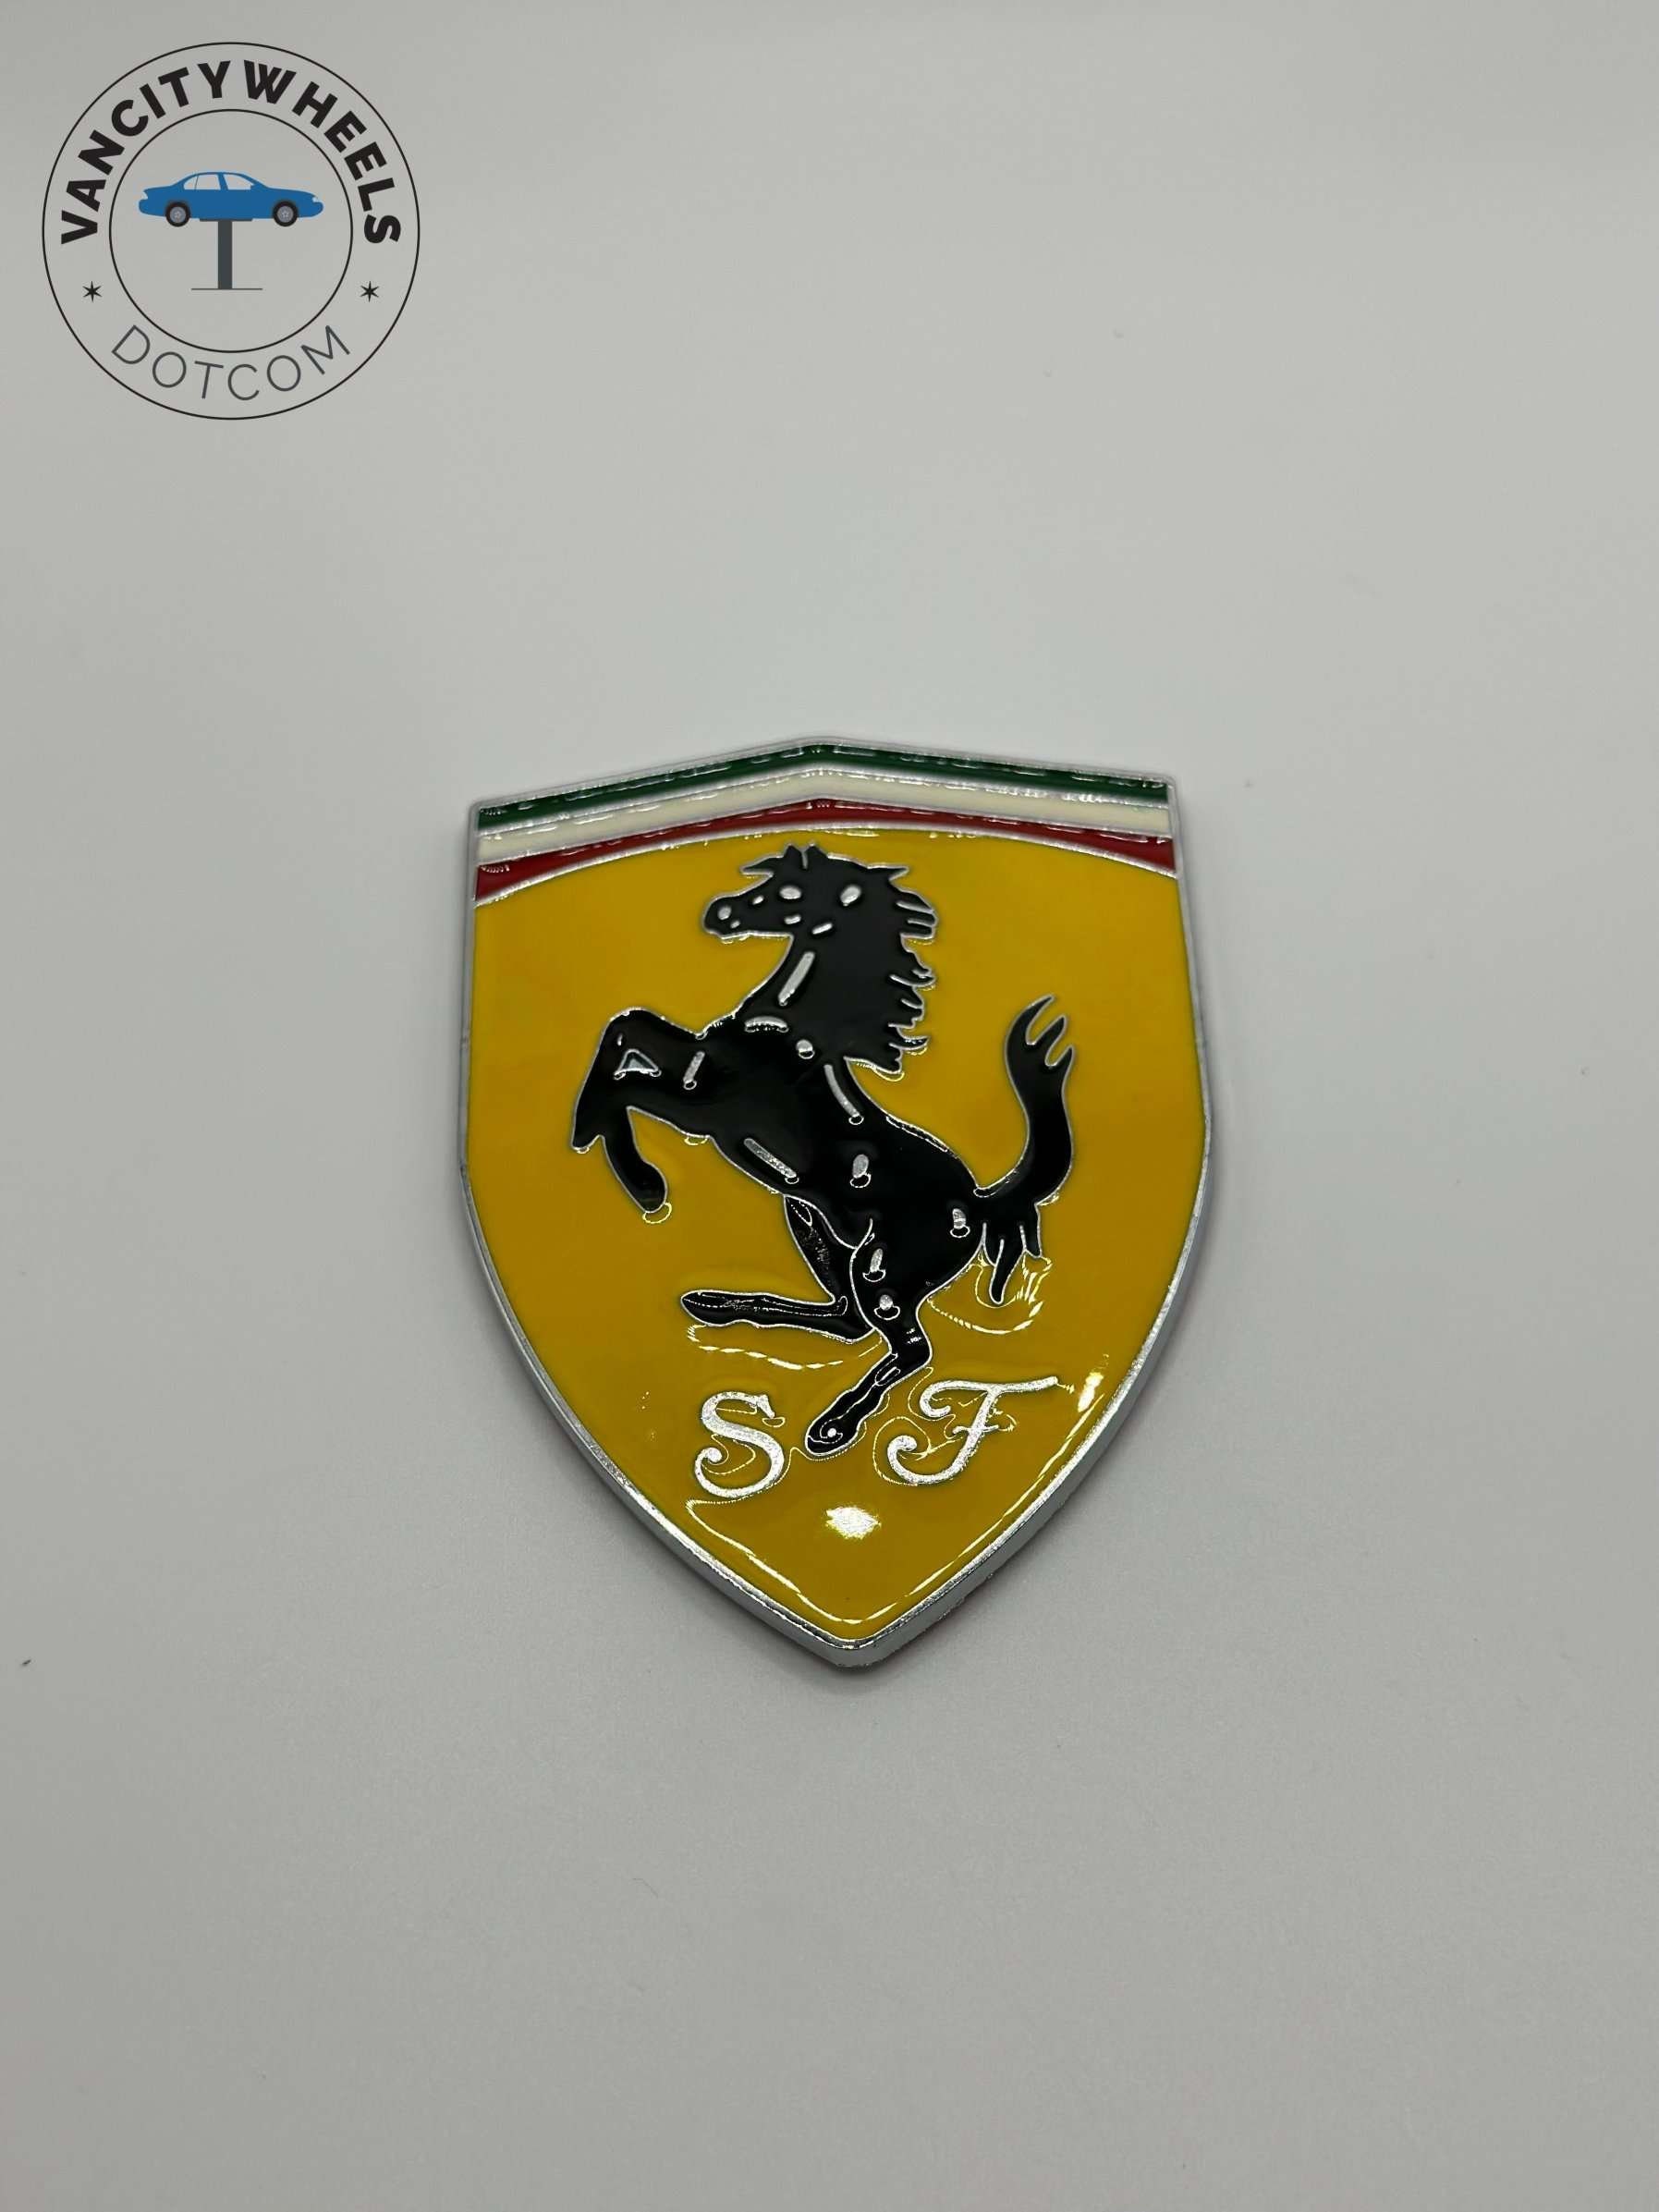 Ferrari Decals - Aufkleber für Autos